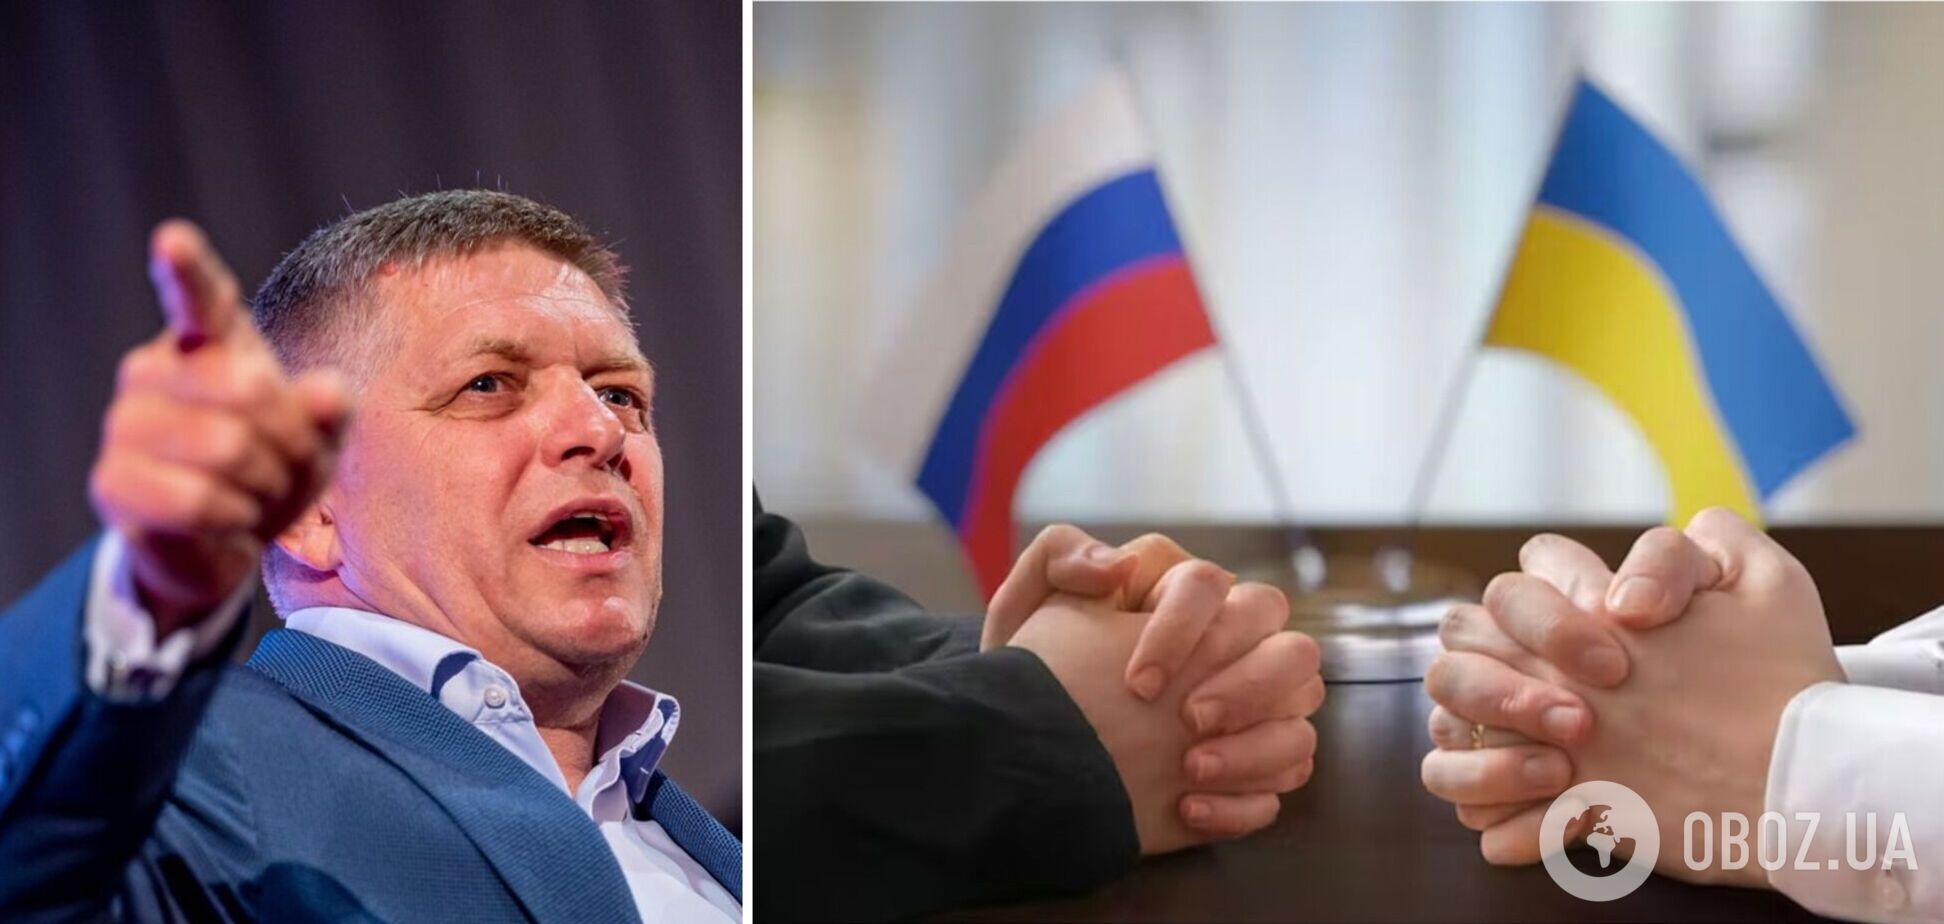 Прем’єр Словаччини назвав війну РФ проти України 'замороженим конфліктом' і заговорив про необхідність переговорів